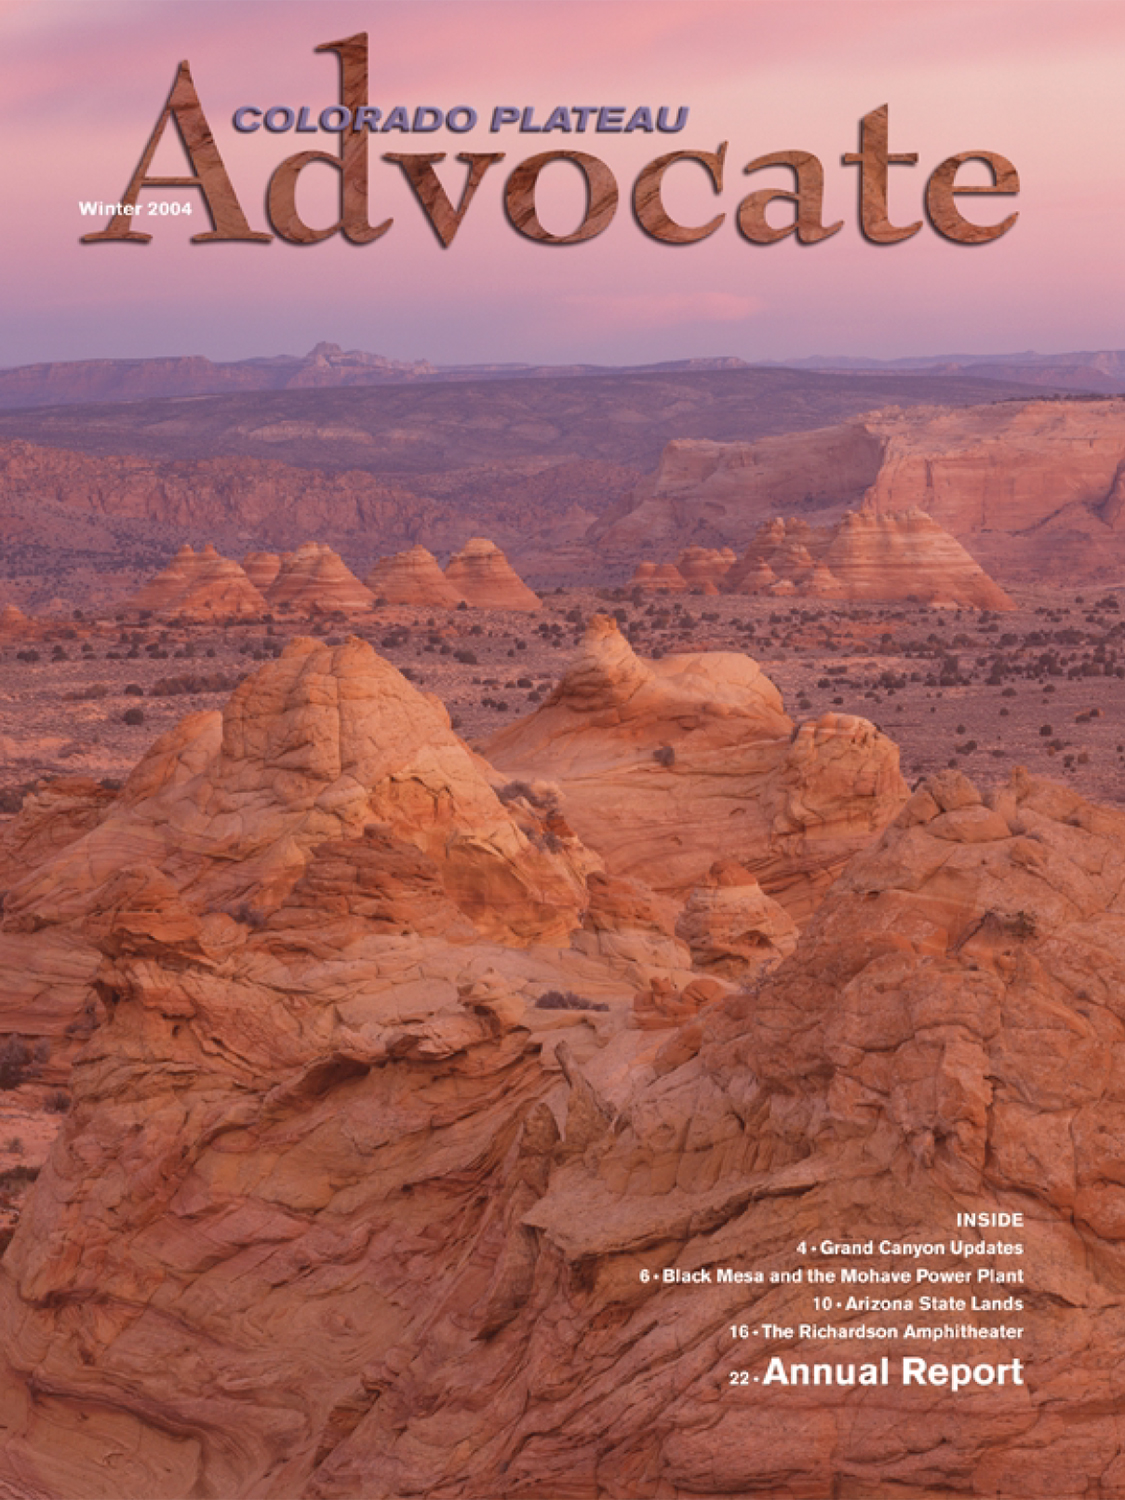 Read the Advocate Magazine